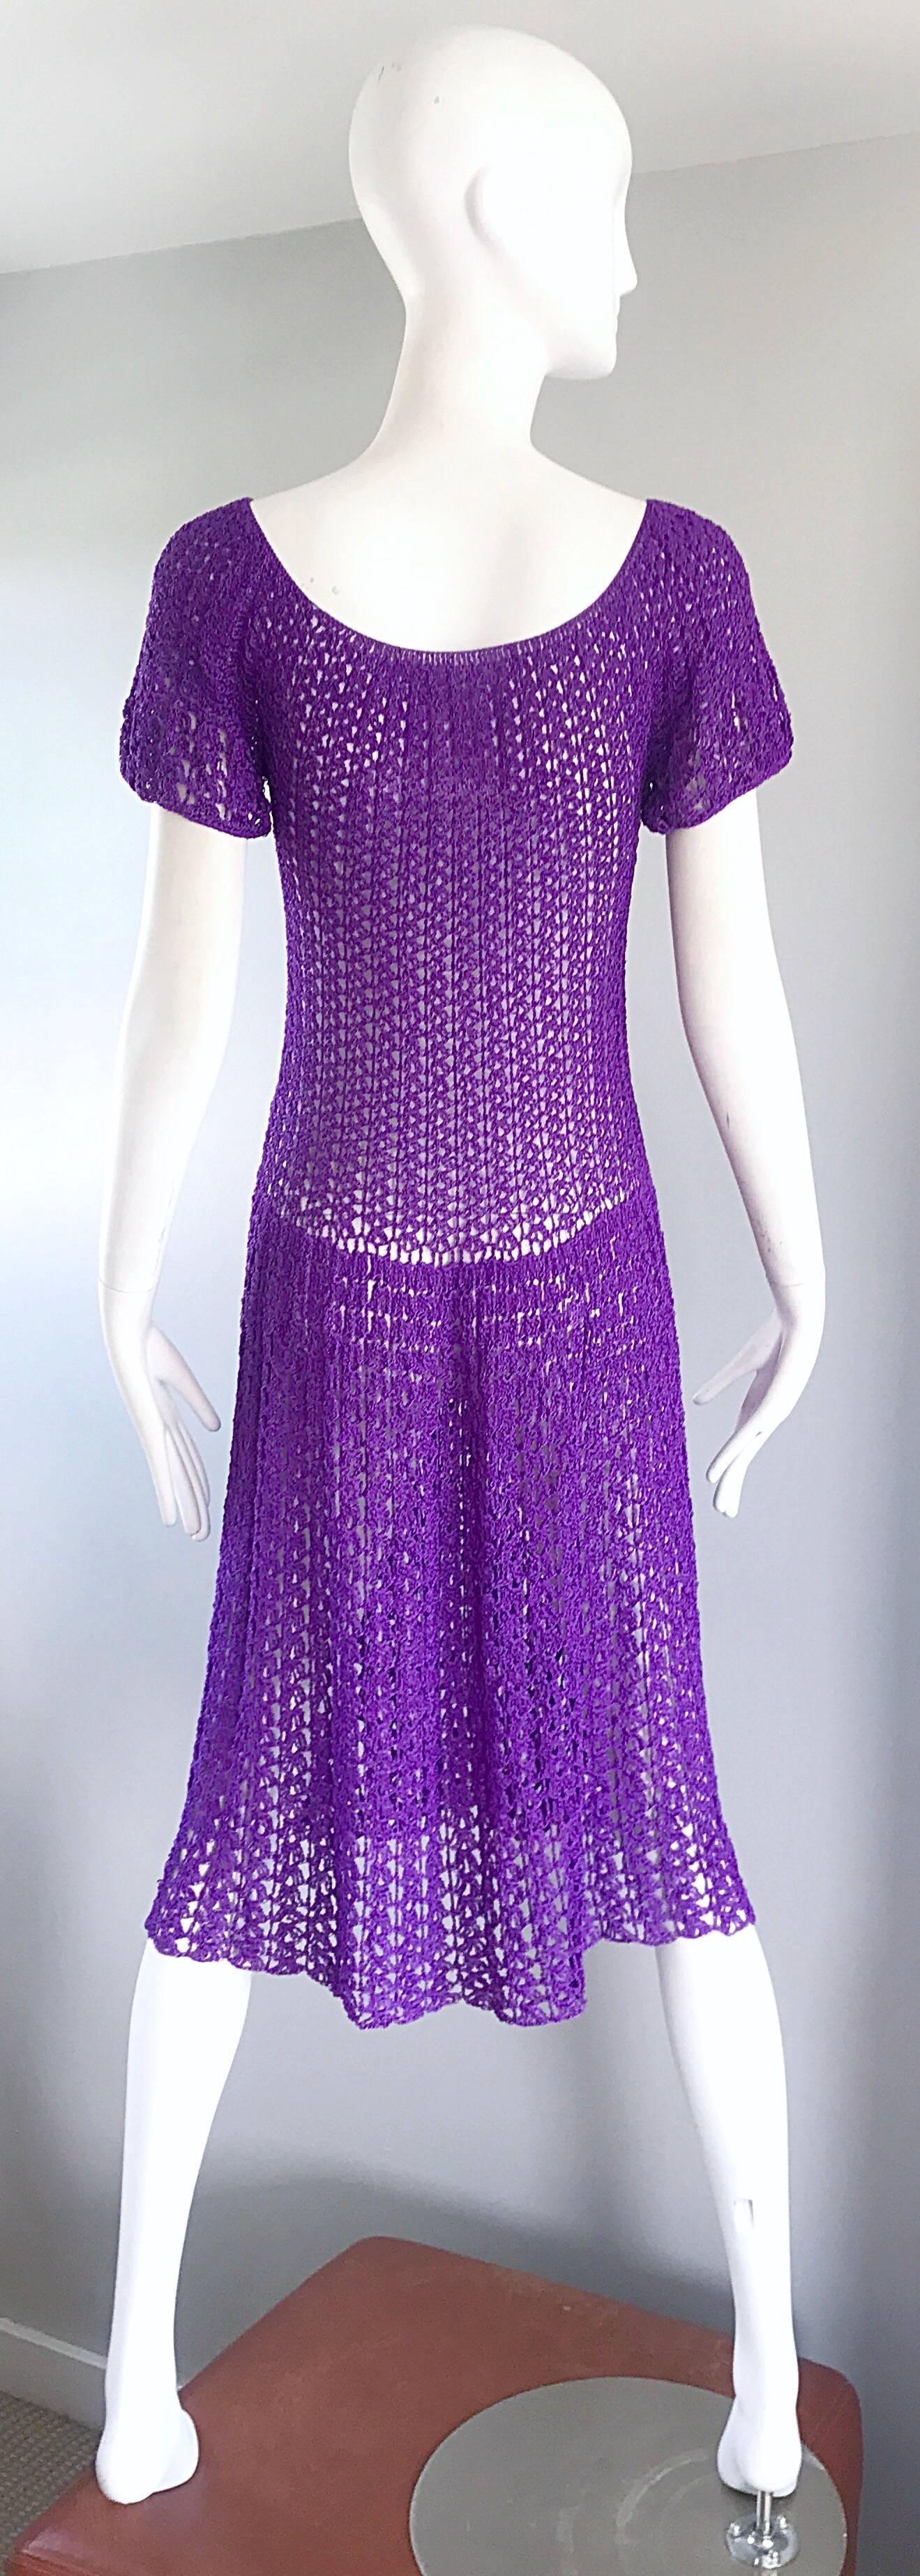 1960s purple dress